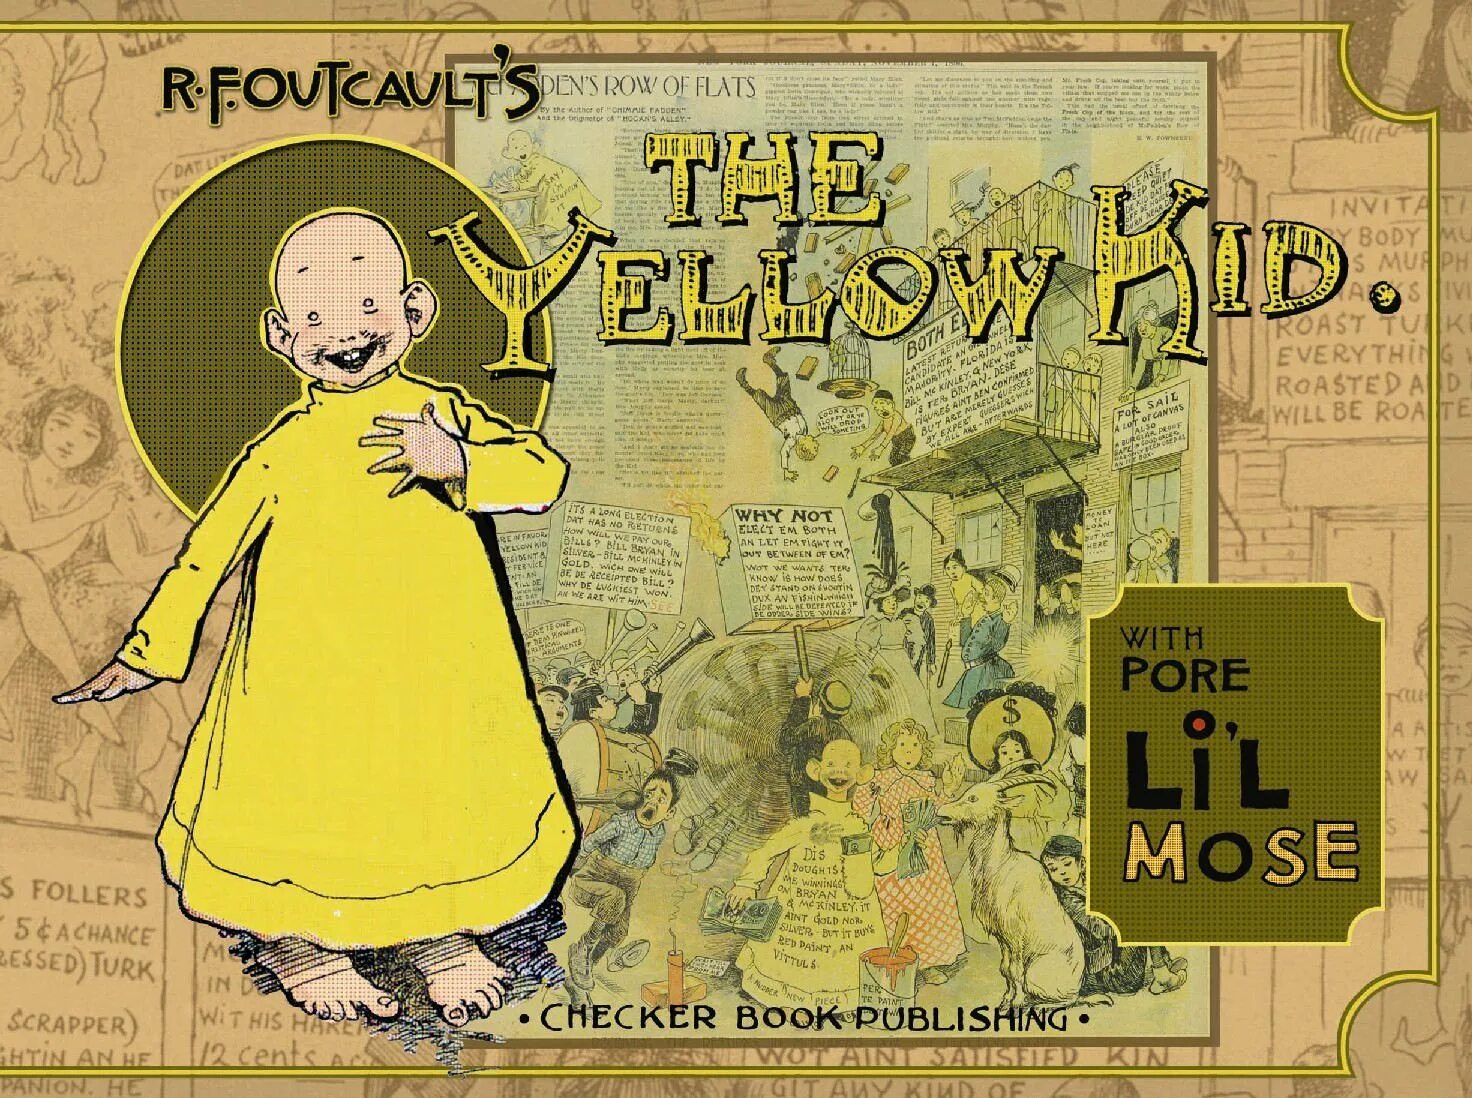 Желтый малыш. Ричард Аутколт желтый малыш. Джозеф Пулитцер первый комикс. Желтый малыш комикс. Пулитцер желтая пресса.